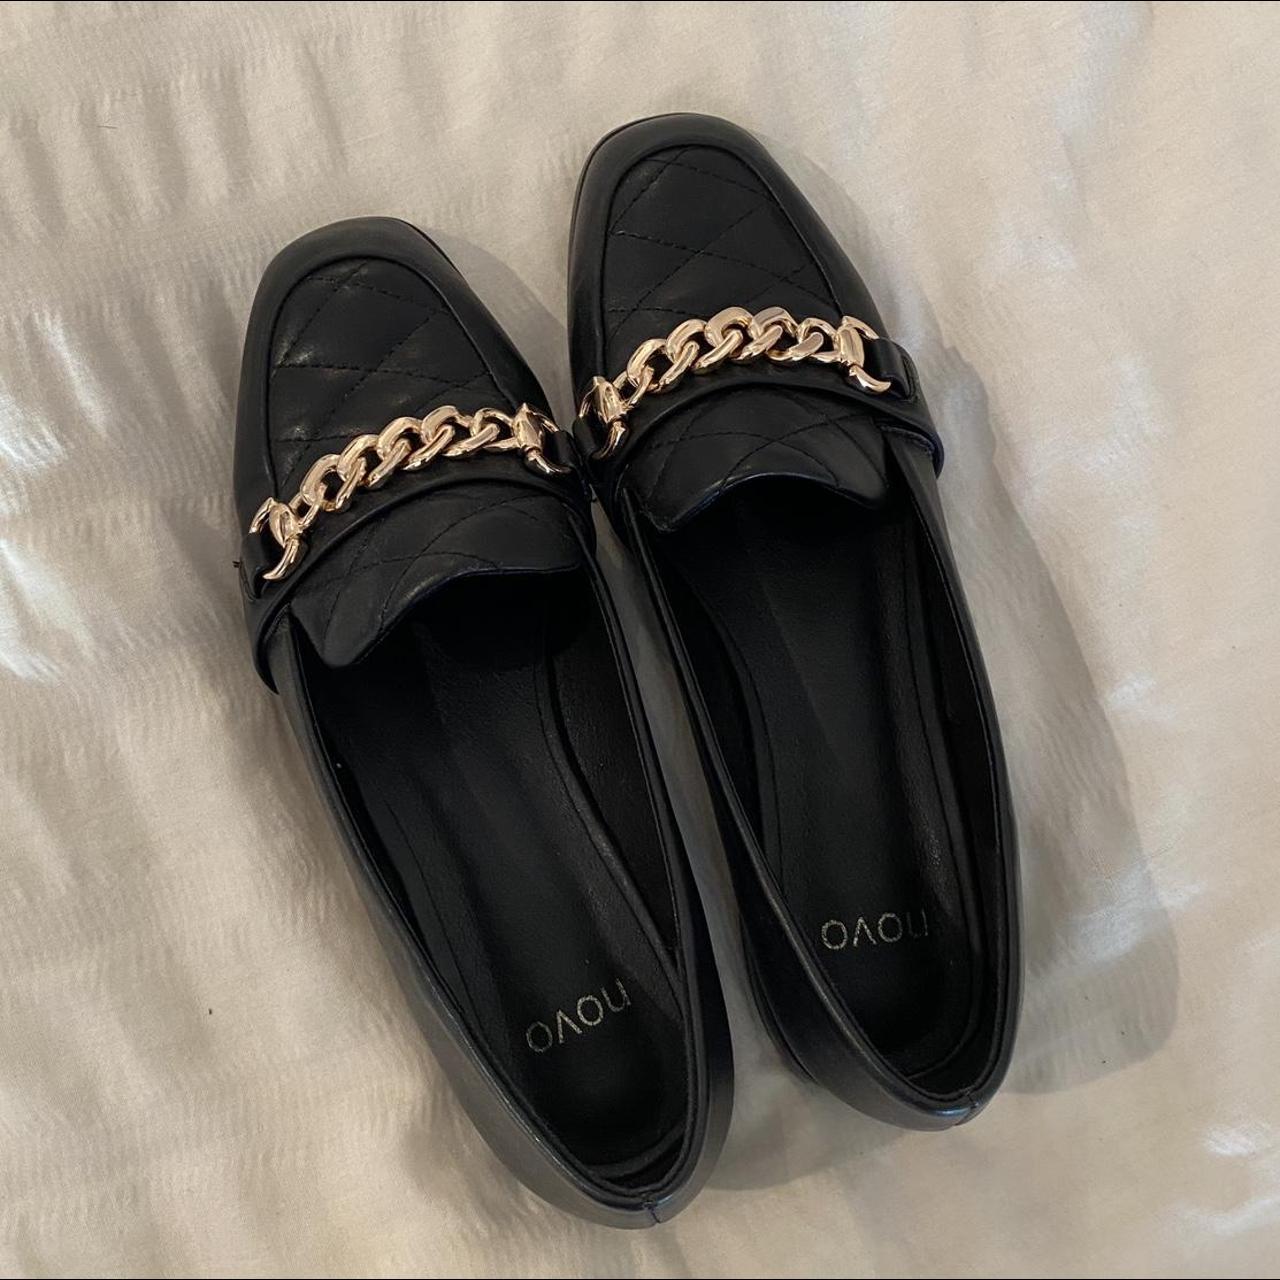 Novo Women’s black loafer slip on shoes *womens... - Depop